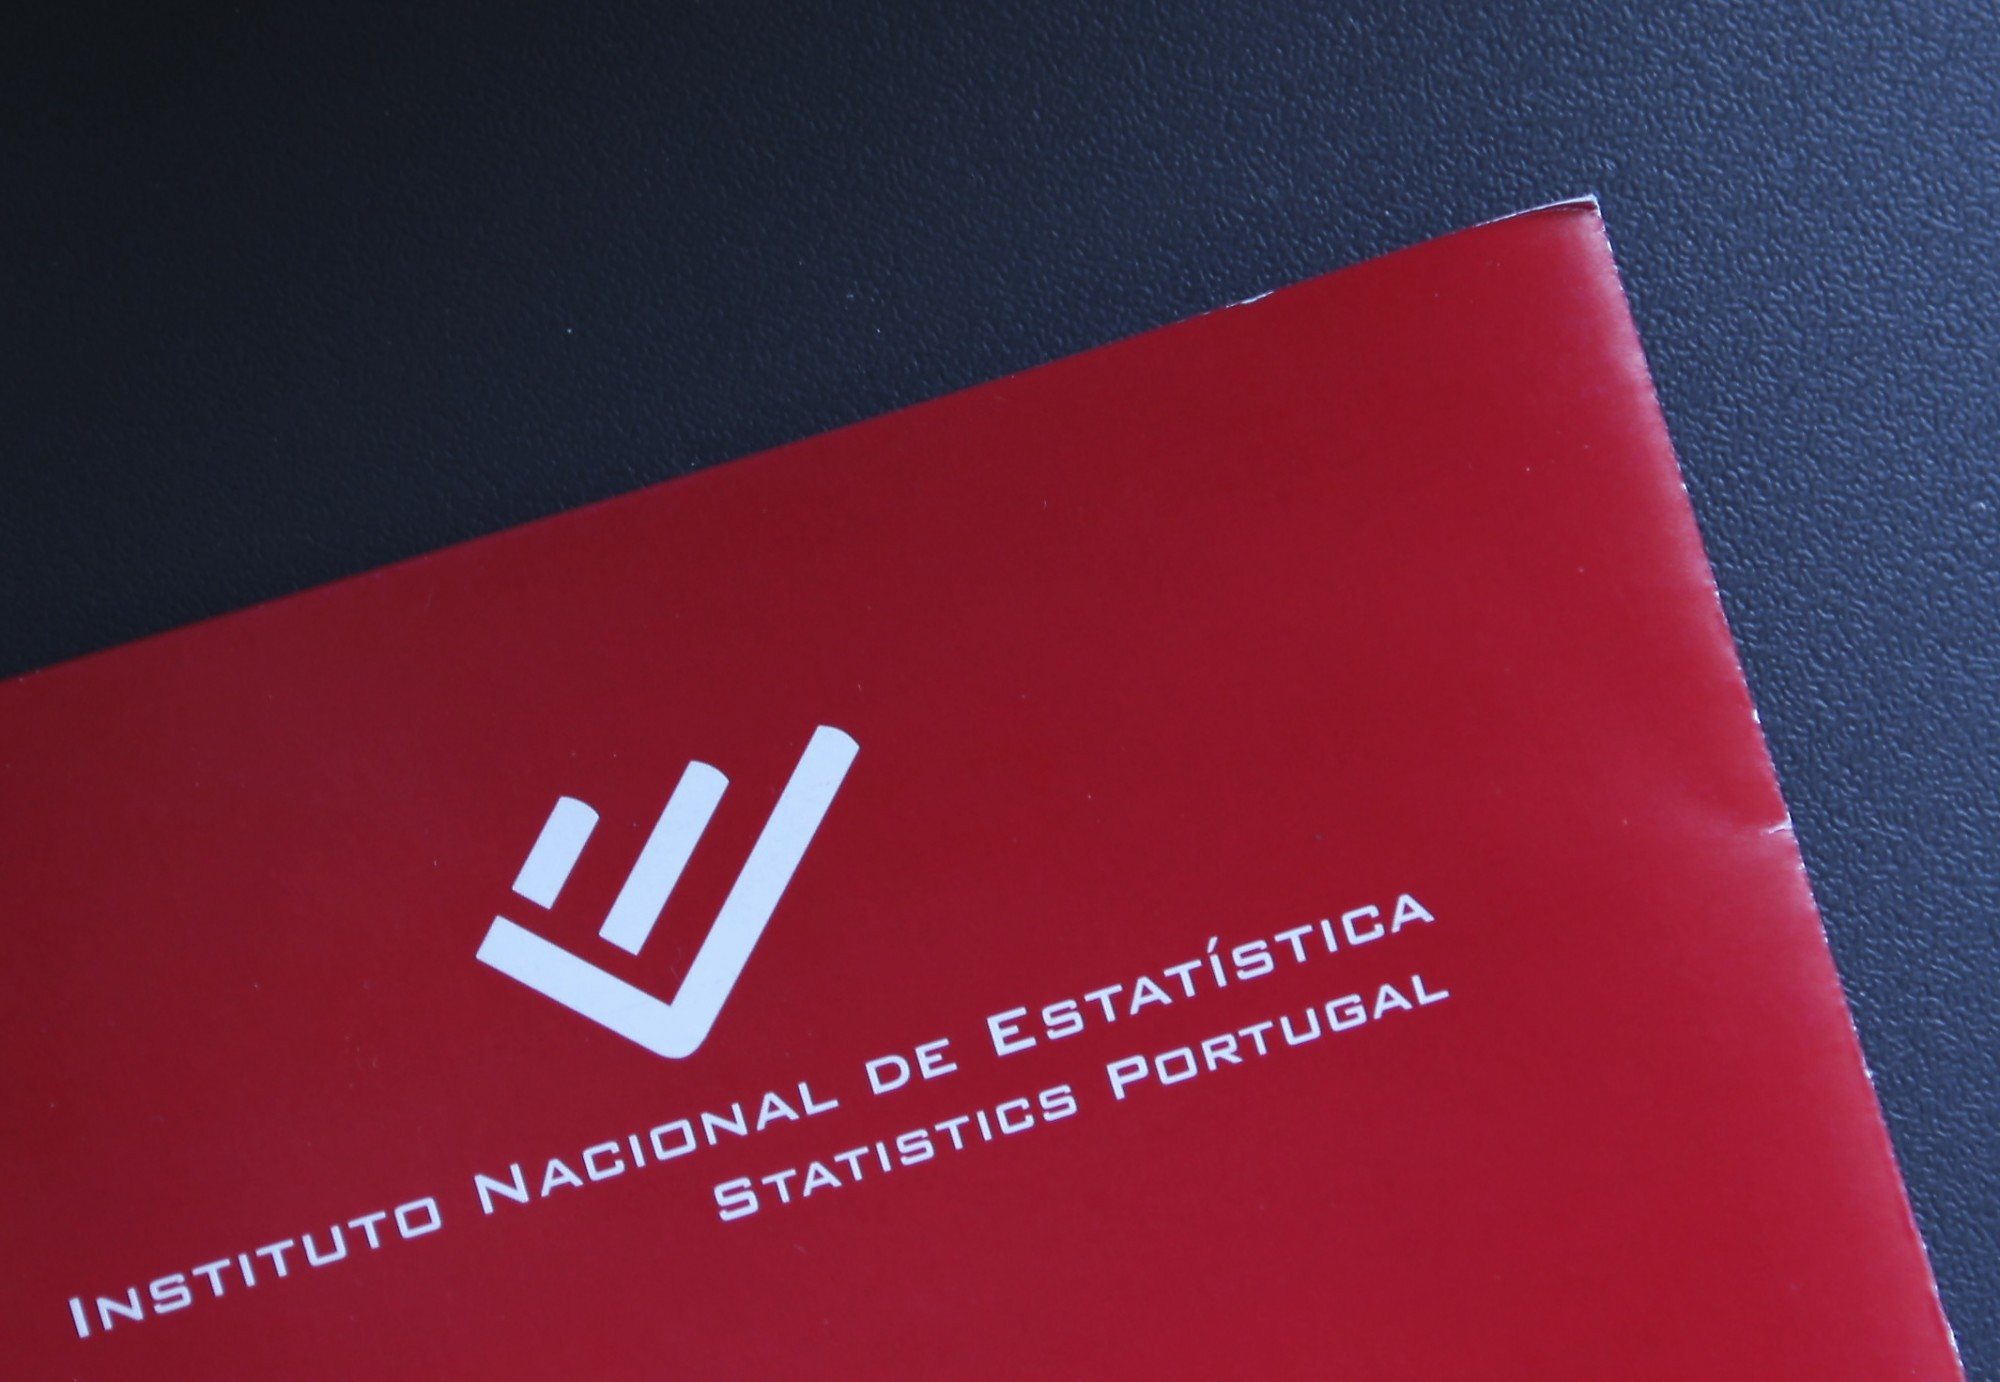 Instituto Nacional de Estatistica (INE).